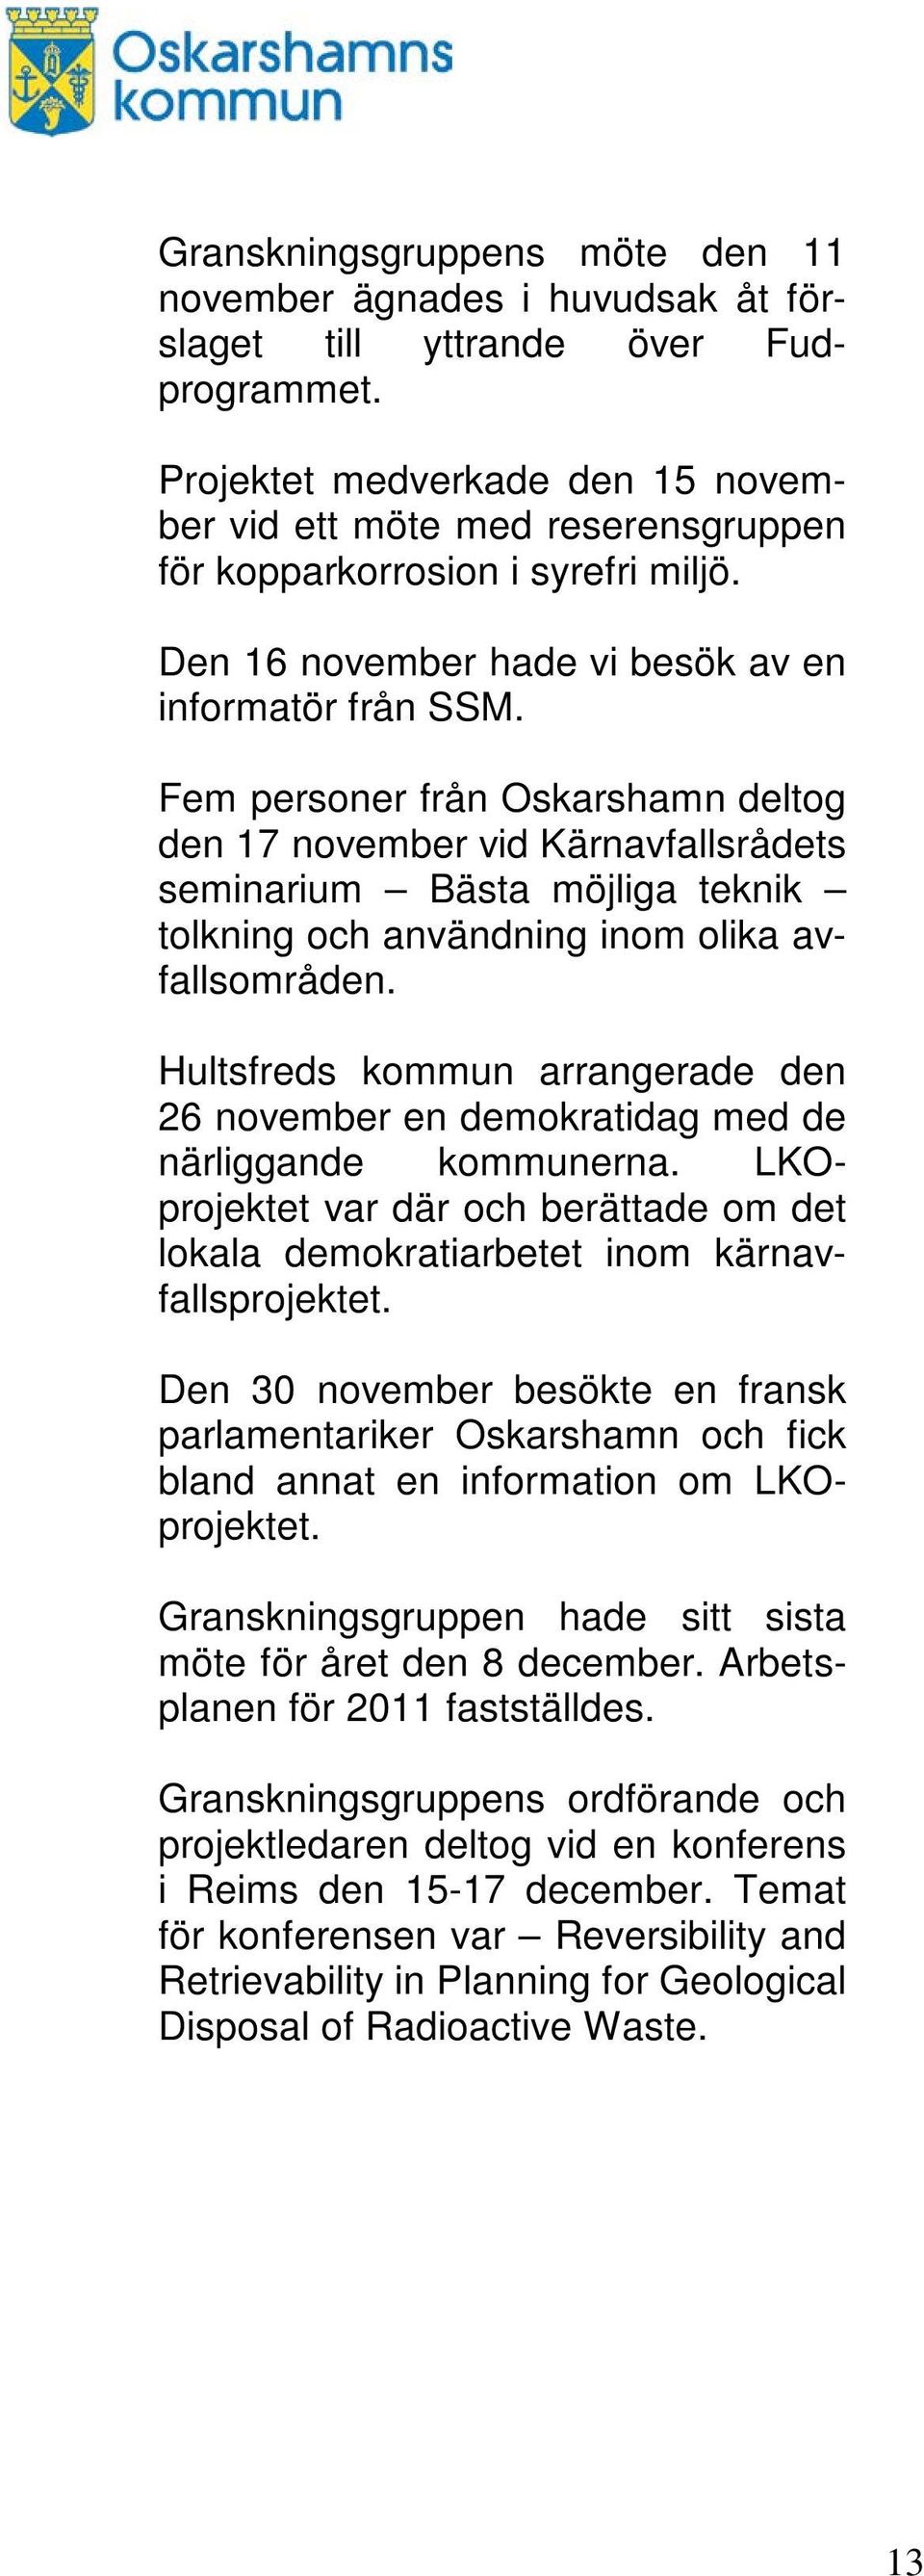 Fem personer från Oskarshamn deltog den 17 november vid Kärnavfallsrådets seminarium Bästa möjliga teknik tolkning och användning inom olika avfallsområden.